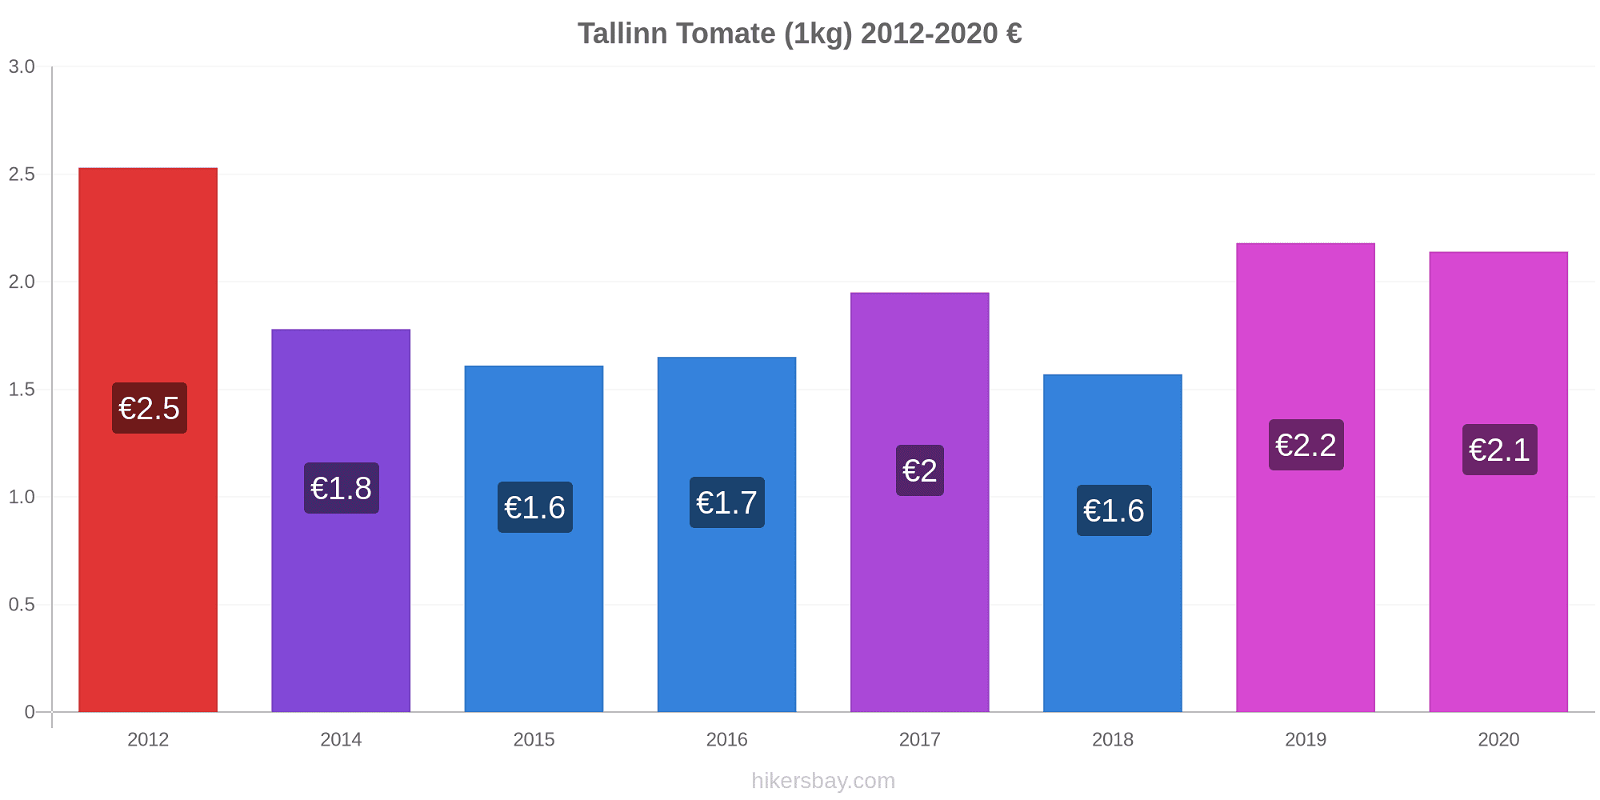 Tallinn variação de preço Tomate (1kg) hikersbay.com